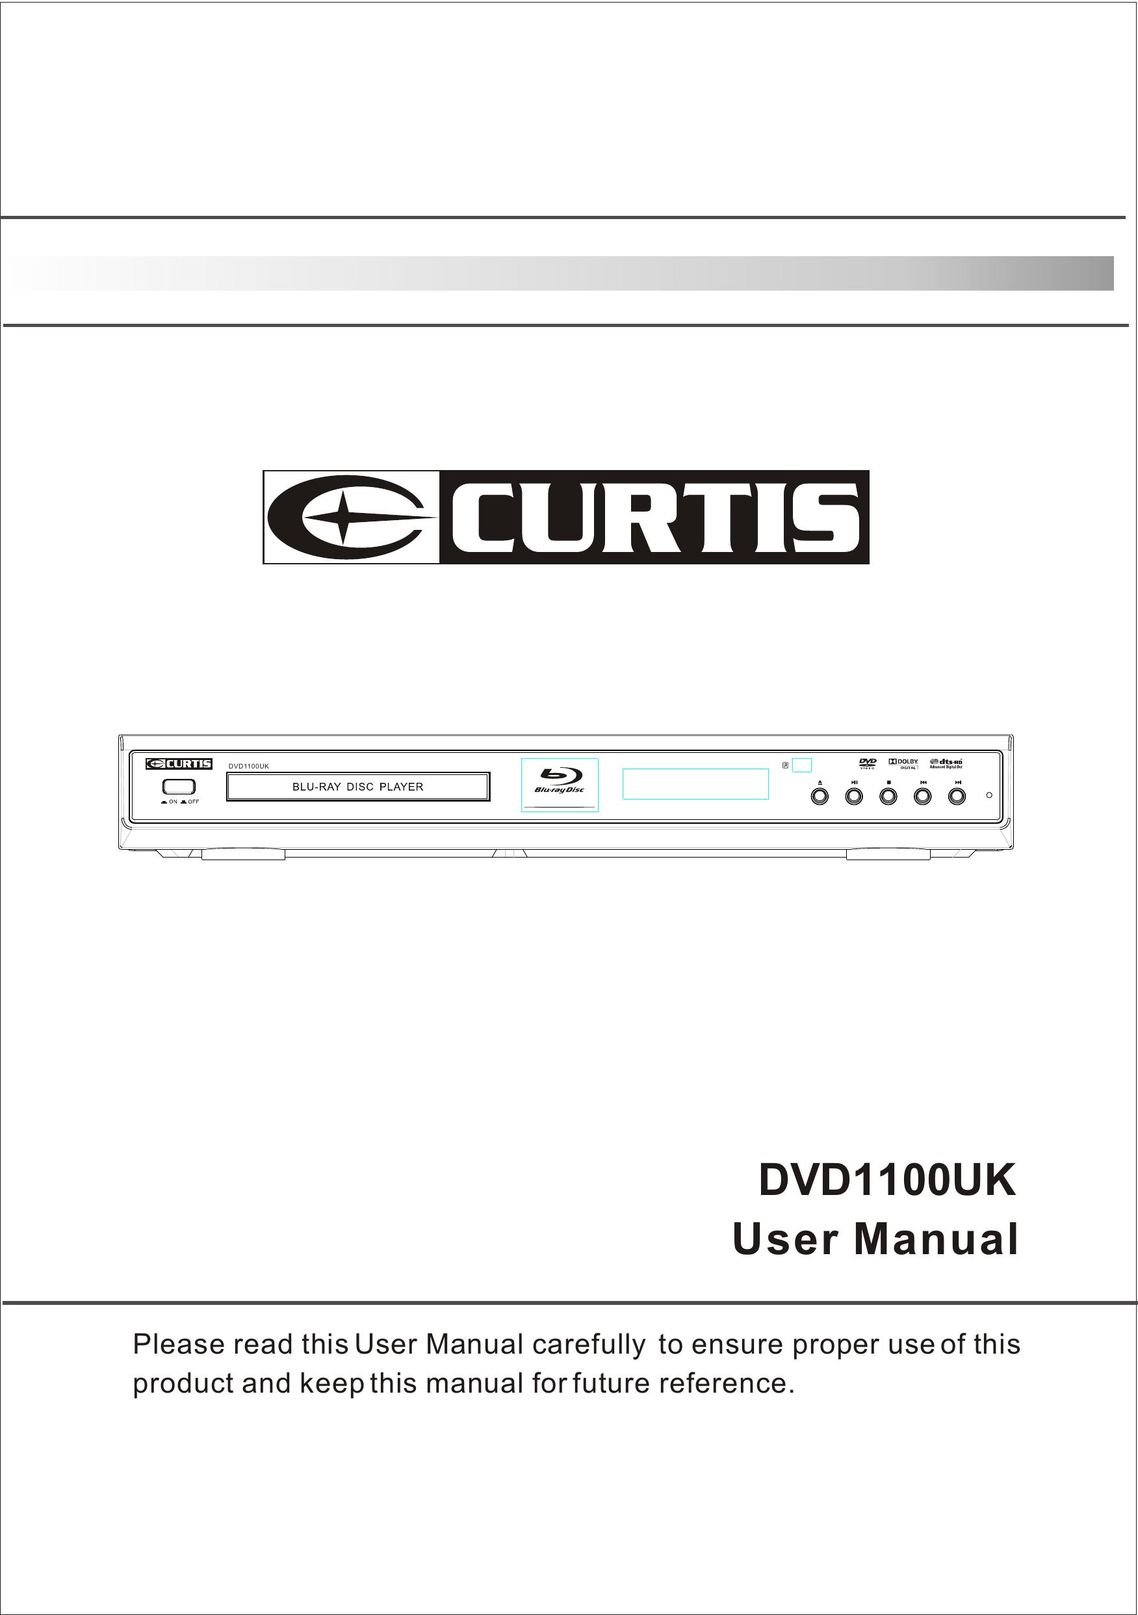 Curtis DVD1100UK DVD Player User Manual